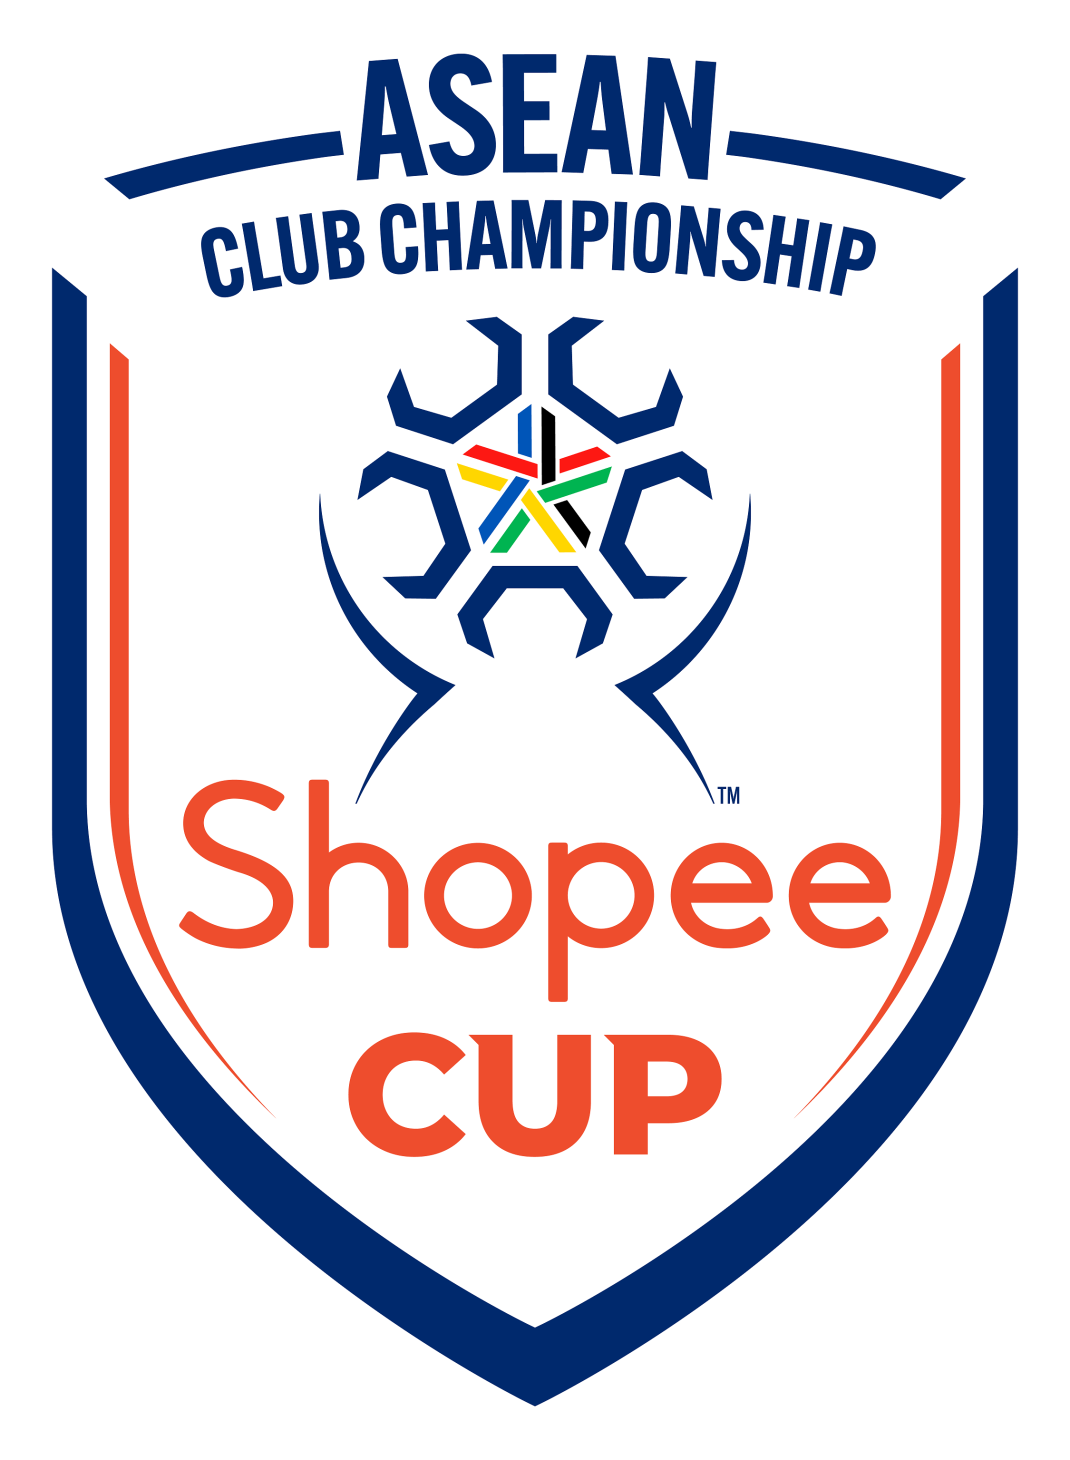 Giải vô địch các Câu Lạc Bộ Đông Nam Á (ASEAN) đổi tên thành Shopee Cup™ - Logo chinh thuc cua Shopee Cup™